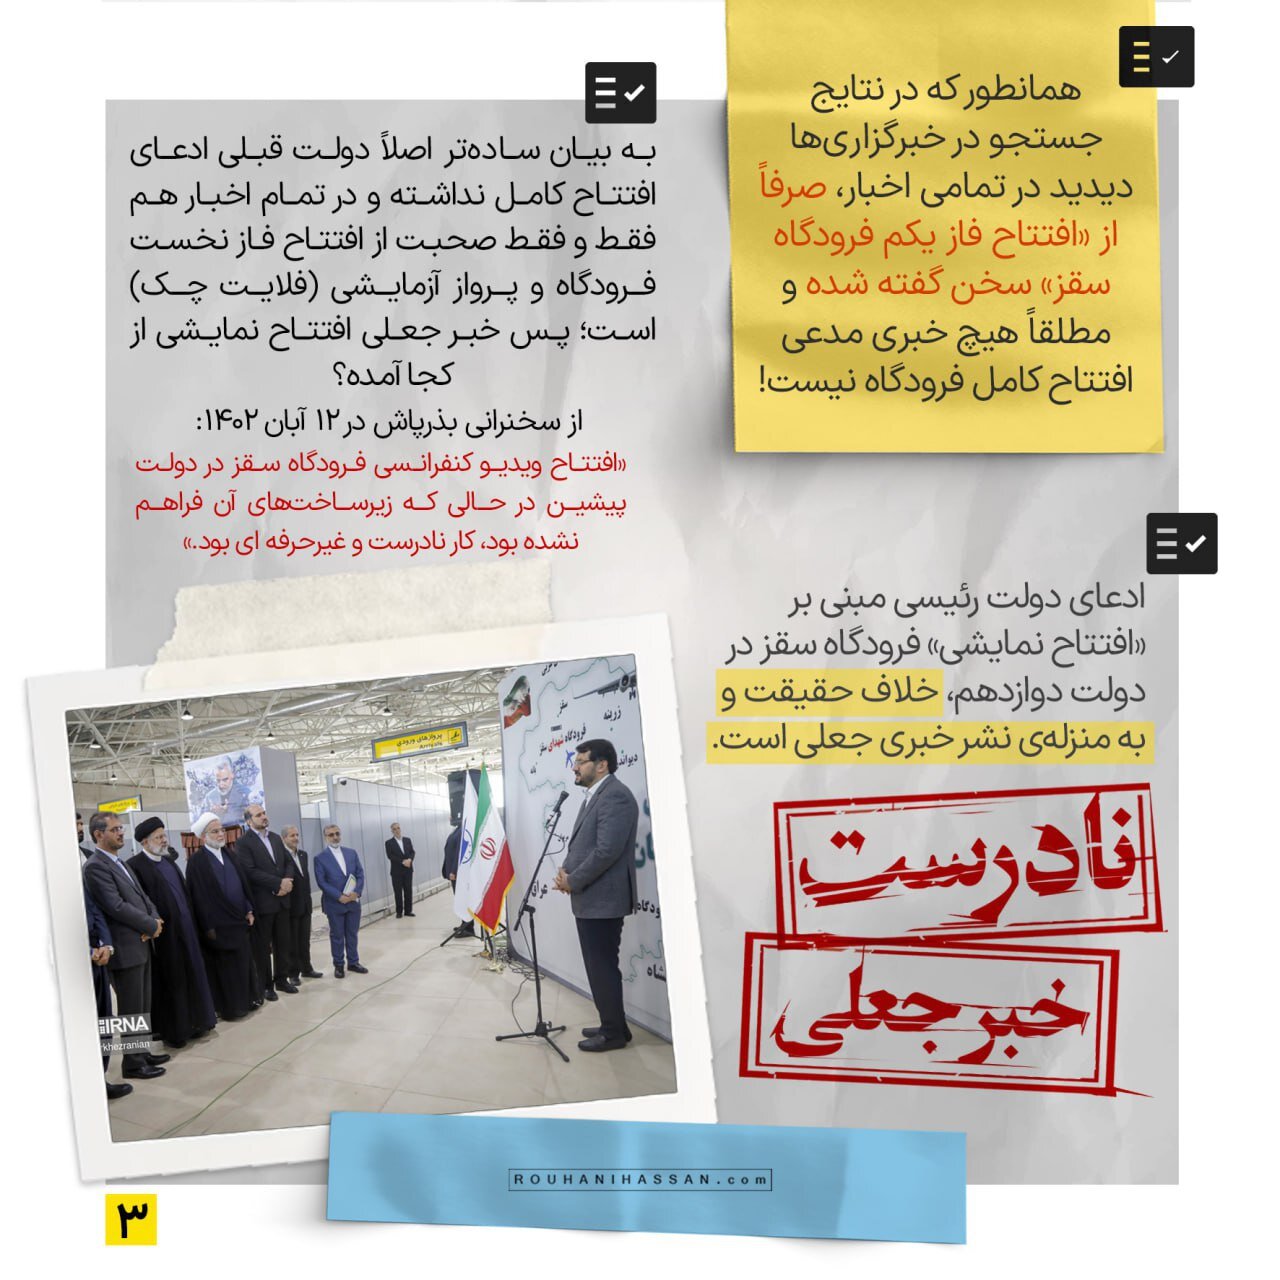 دولت رئیسی یا دولت روحانی؛ کدامیک درست می گویند؟ /راستی آزمایی ۲ ادعا درباره فرودگاه سقز